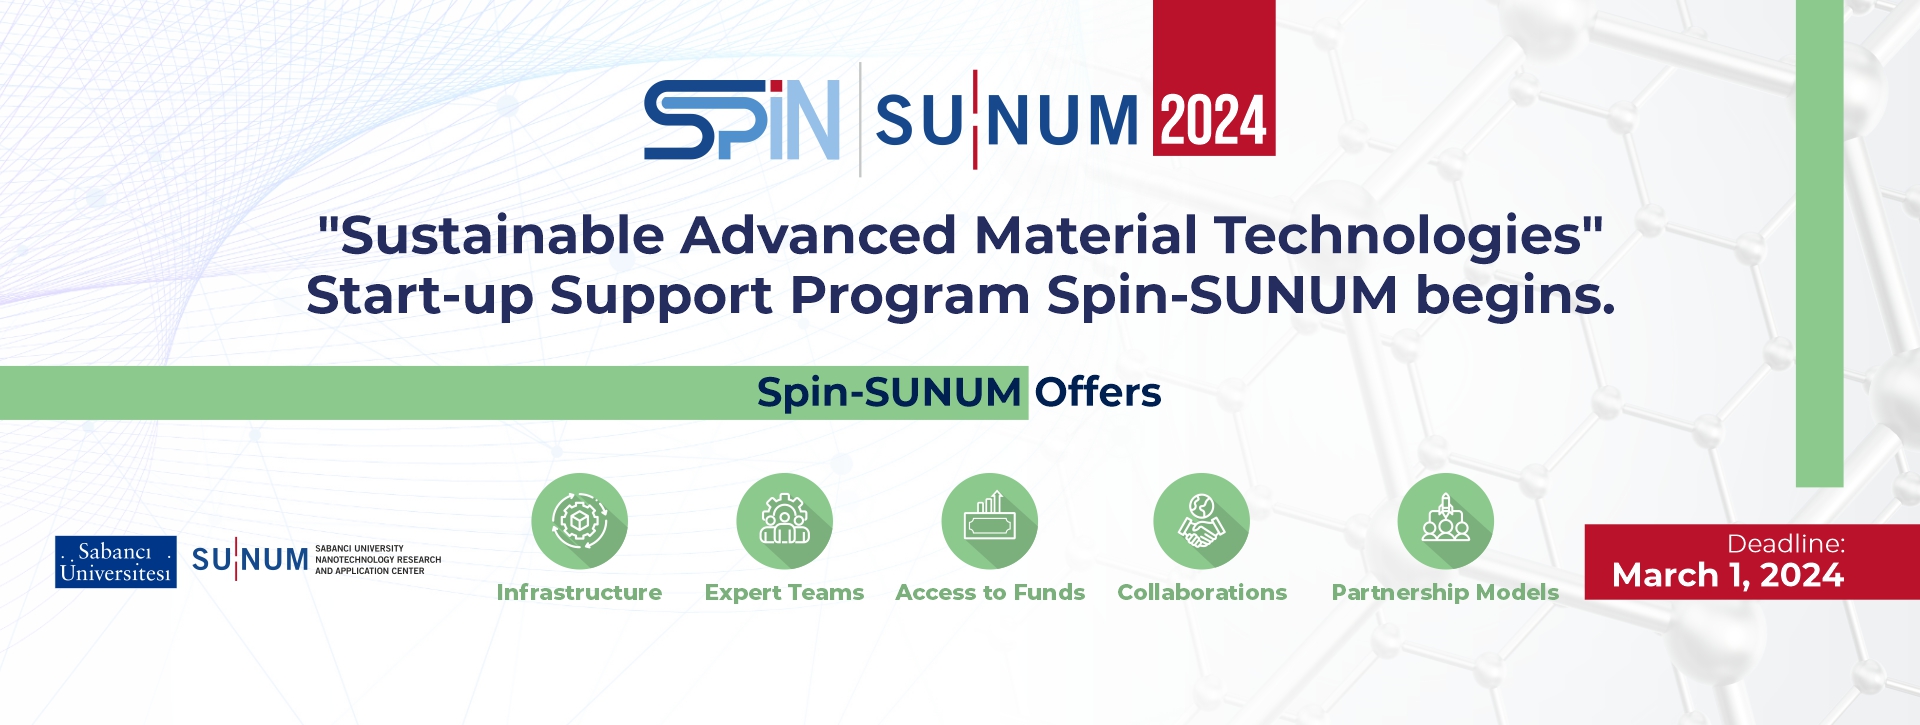 Spin SUNUM 2024 1920x725_en.jpg